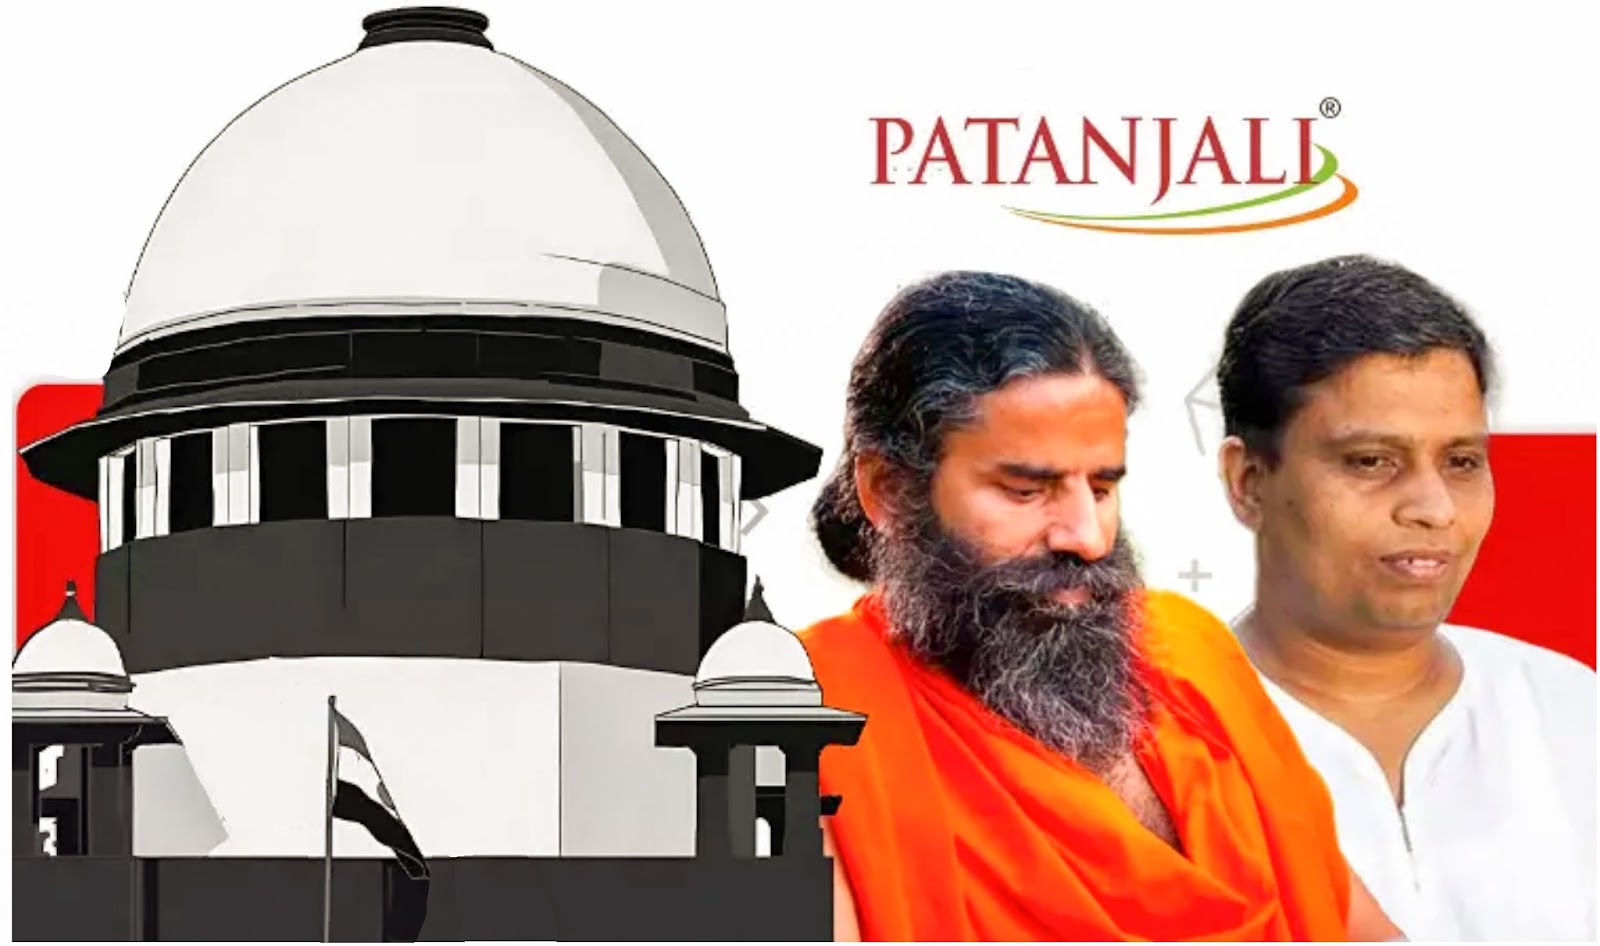 Read full post: Patanjali's Legal Scrutiny